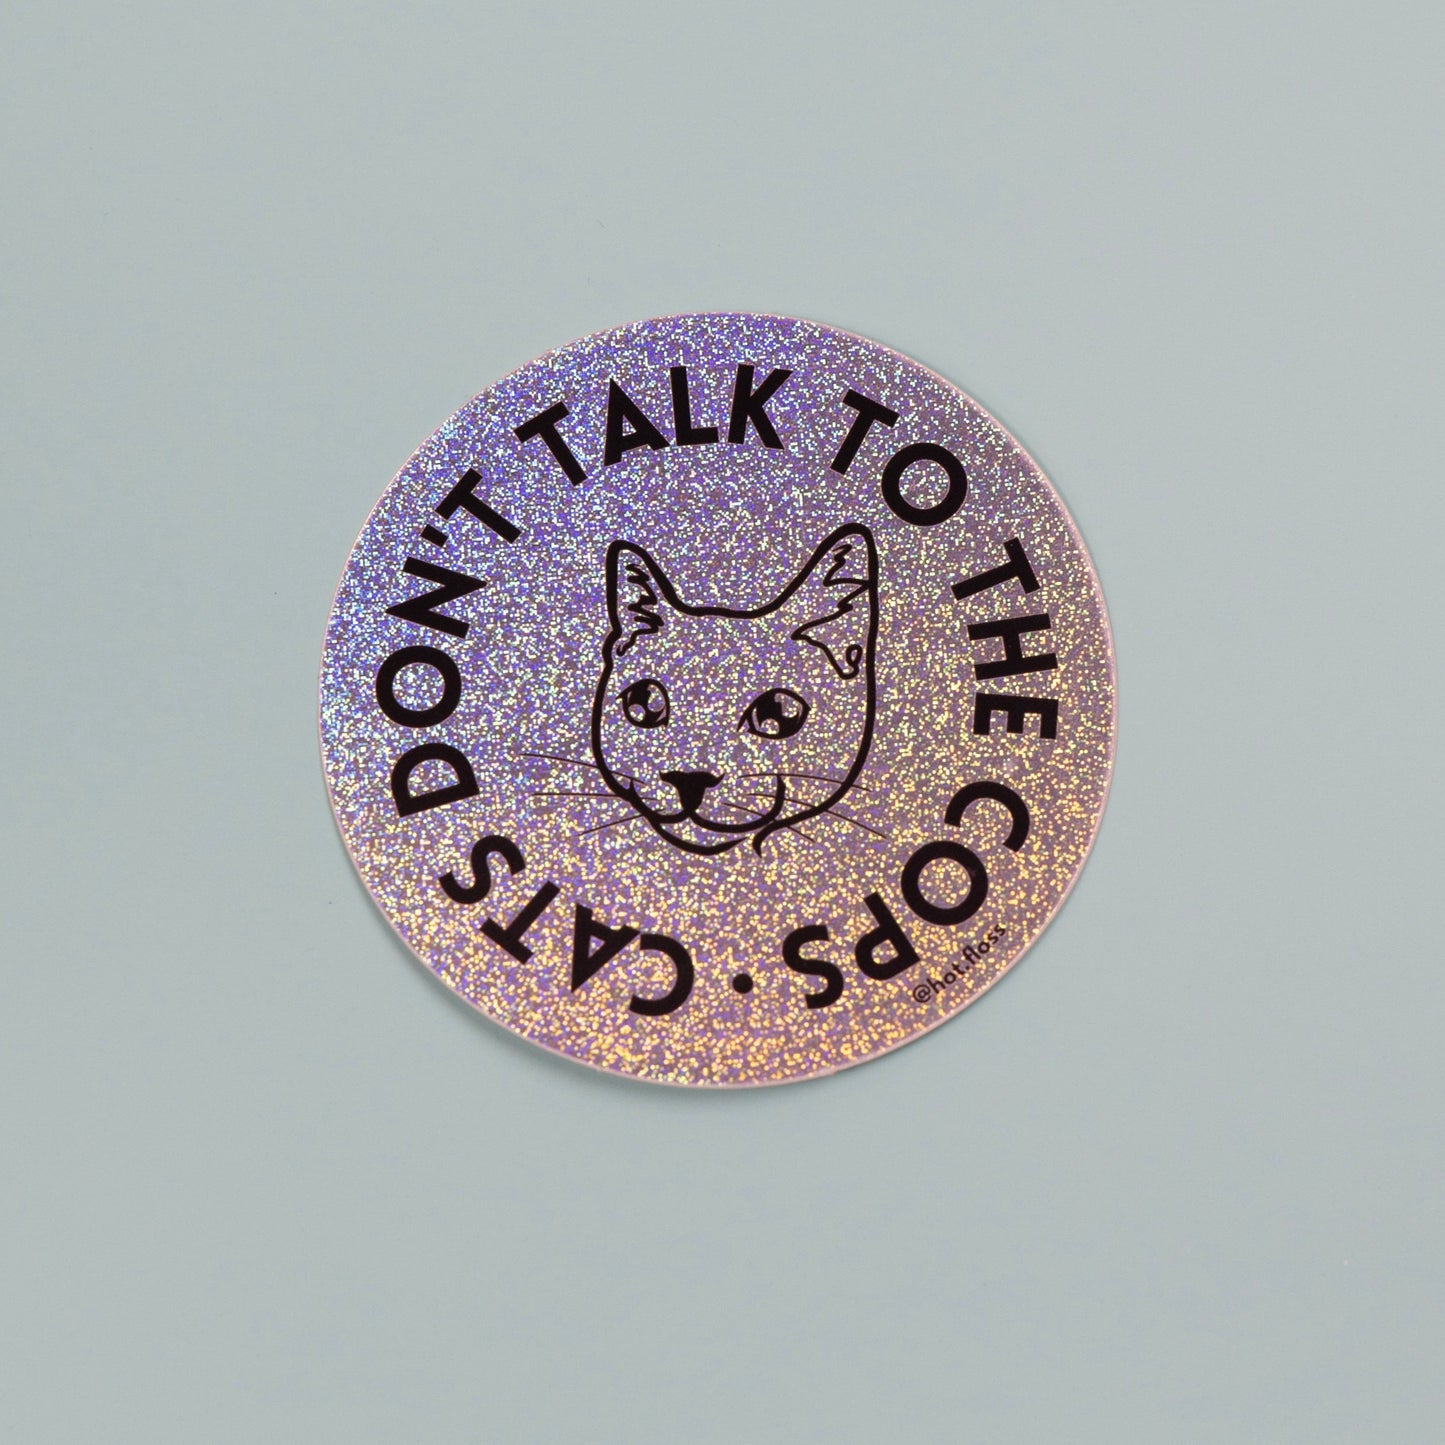 Cats Don't Talk to Cops Glitter Sticker